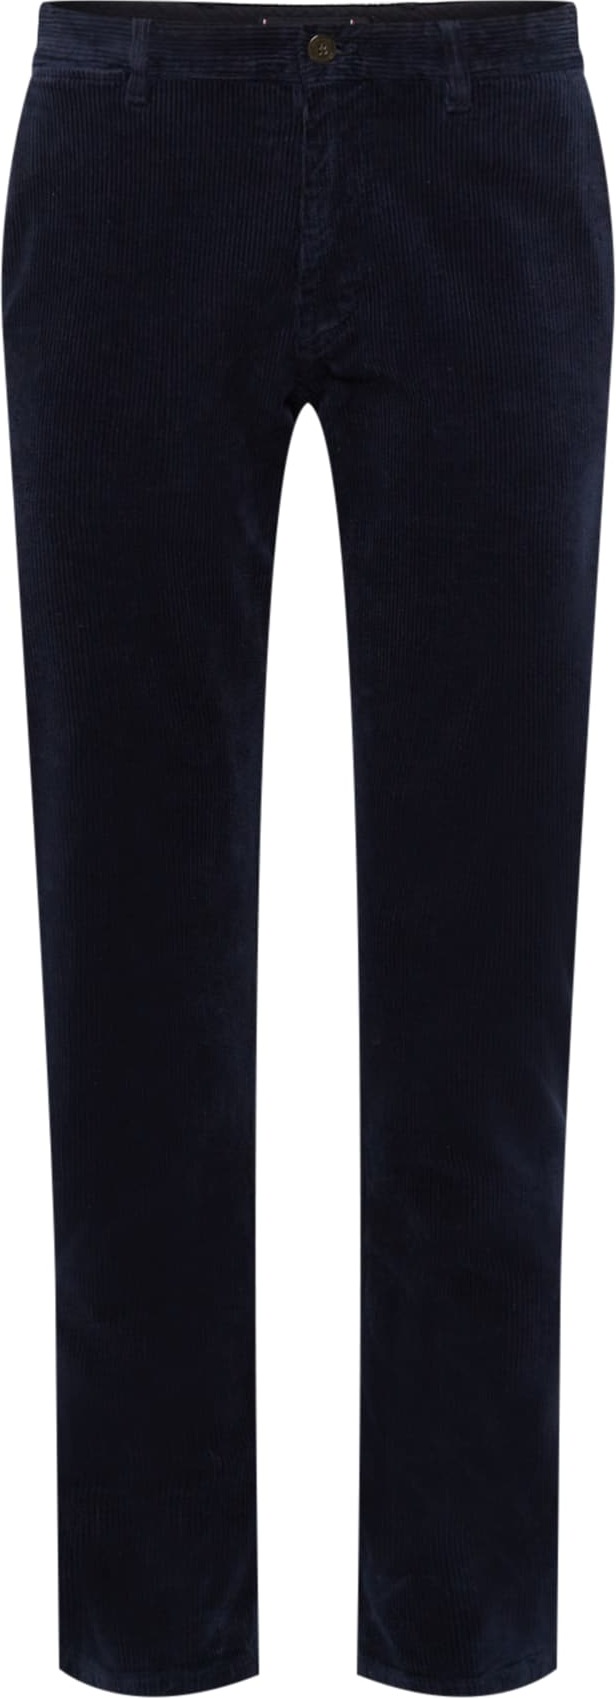 TOMMY HILFIGER Chino kalhoty 'Denton' námořnická modř